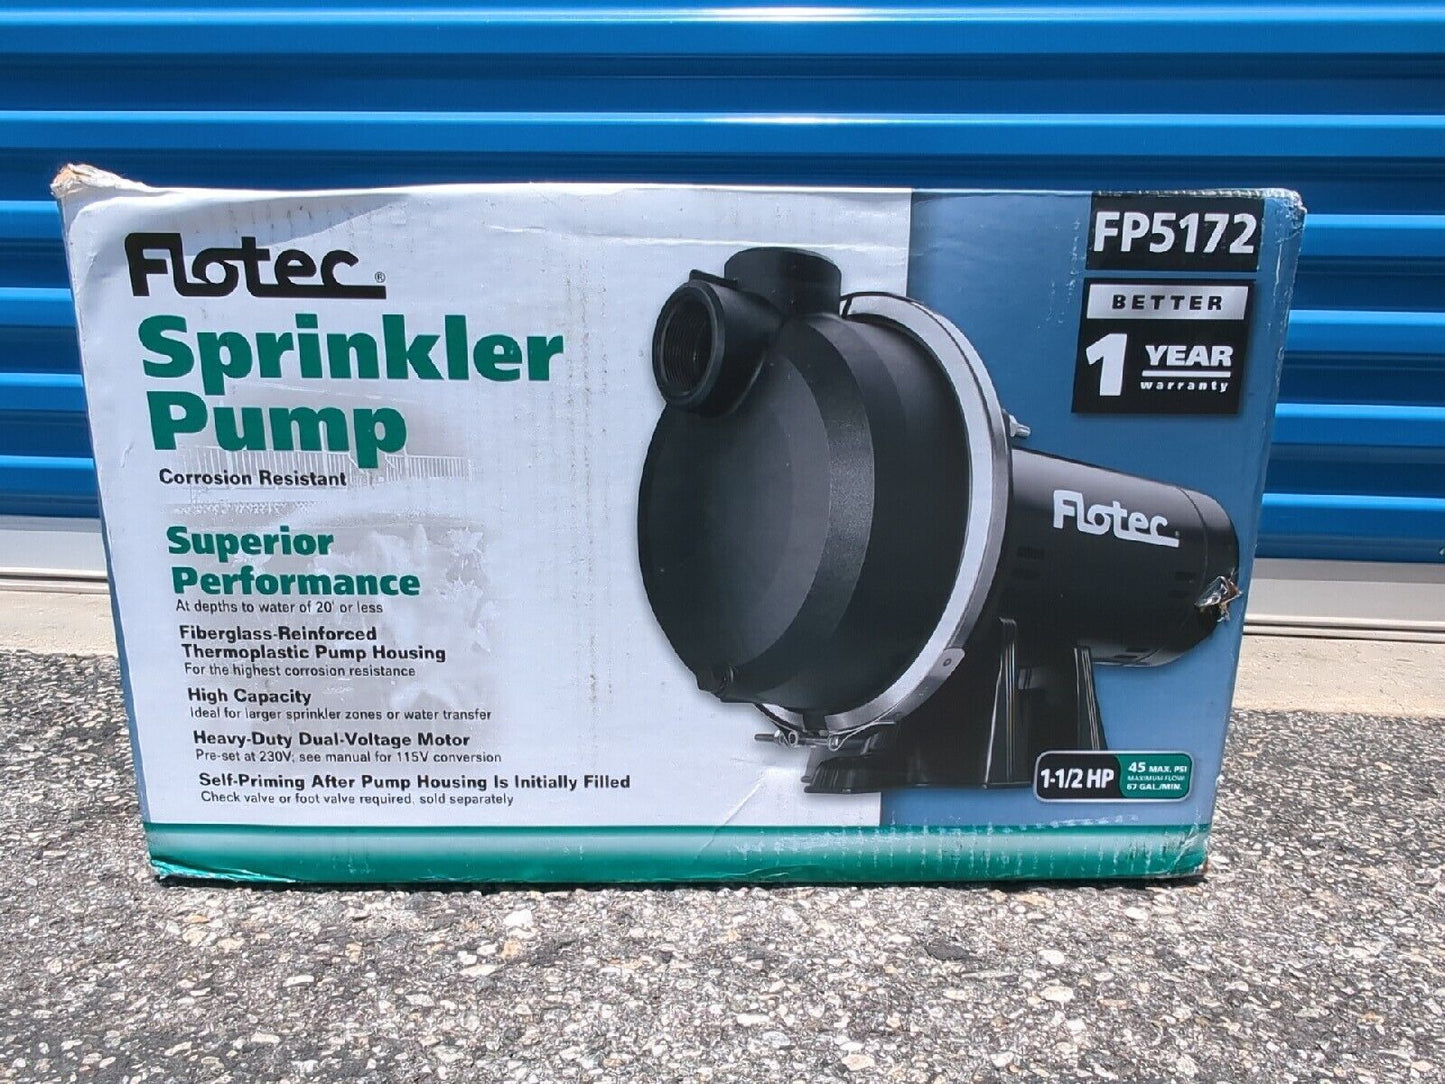 Flotec FP5172-08  - 67 GPM 1-1/2 HP Self-Priming Thermoplastic Sprinkler Pump